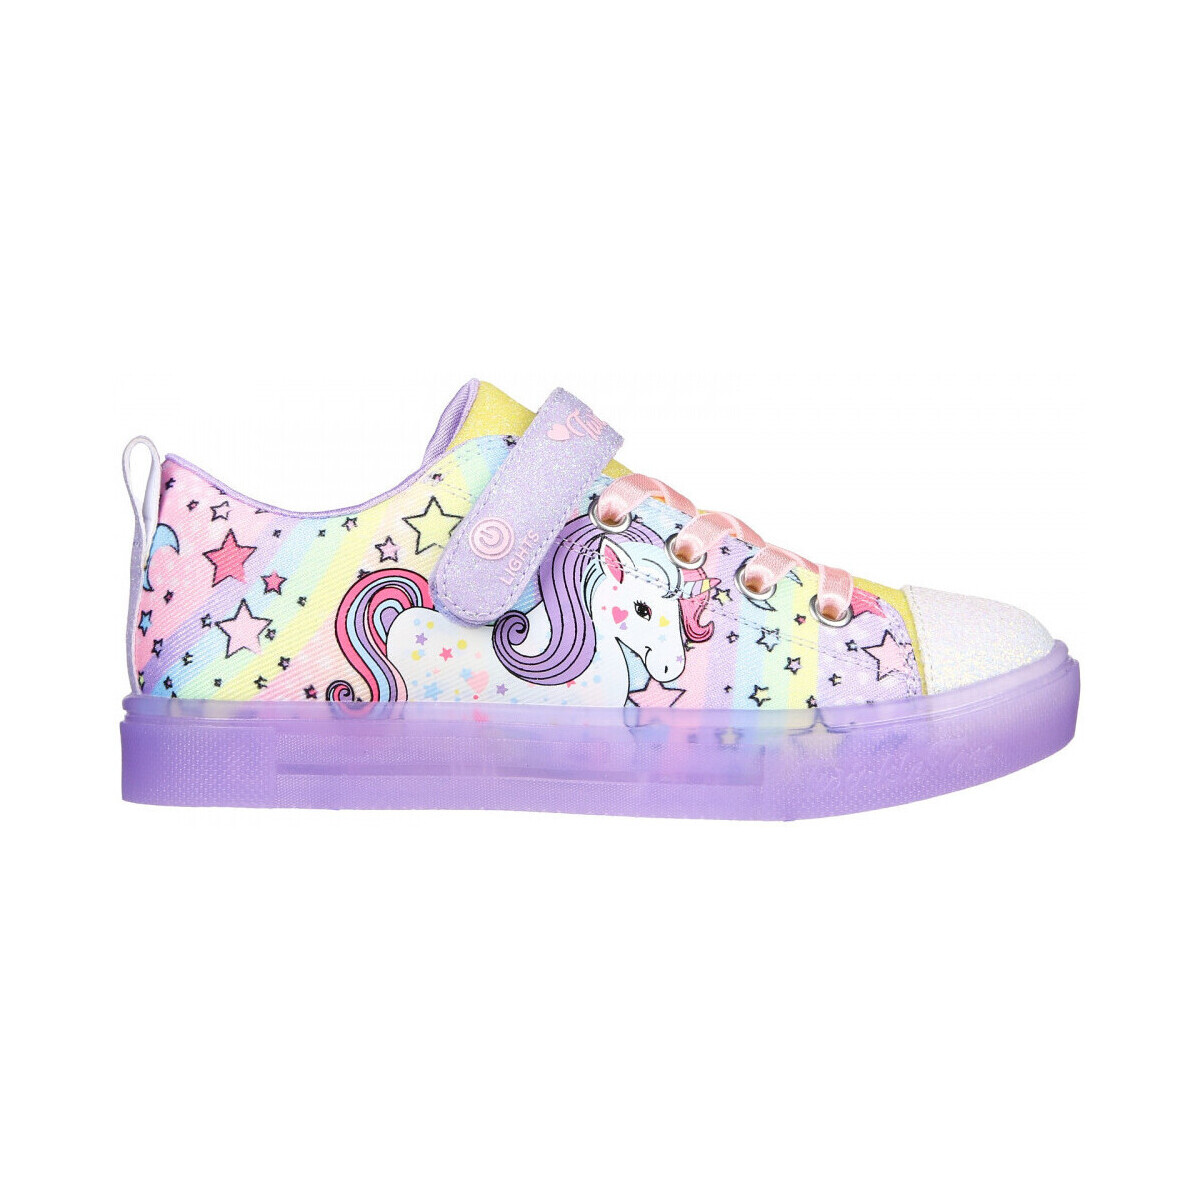 Schuhe Kinder Sneaker Skechers Twinkle sparks ice - unicorn Multicolor